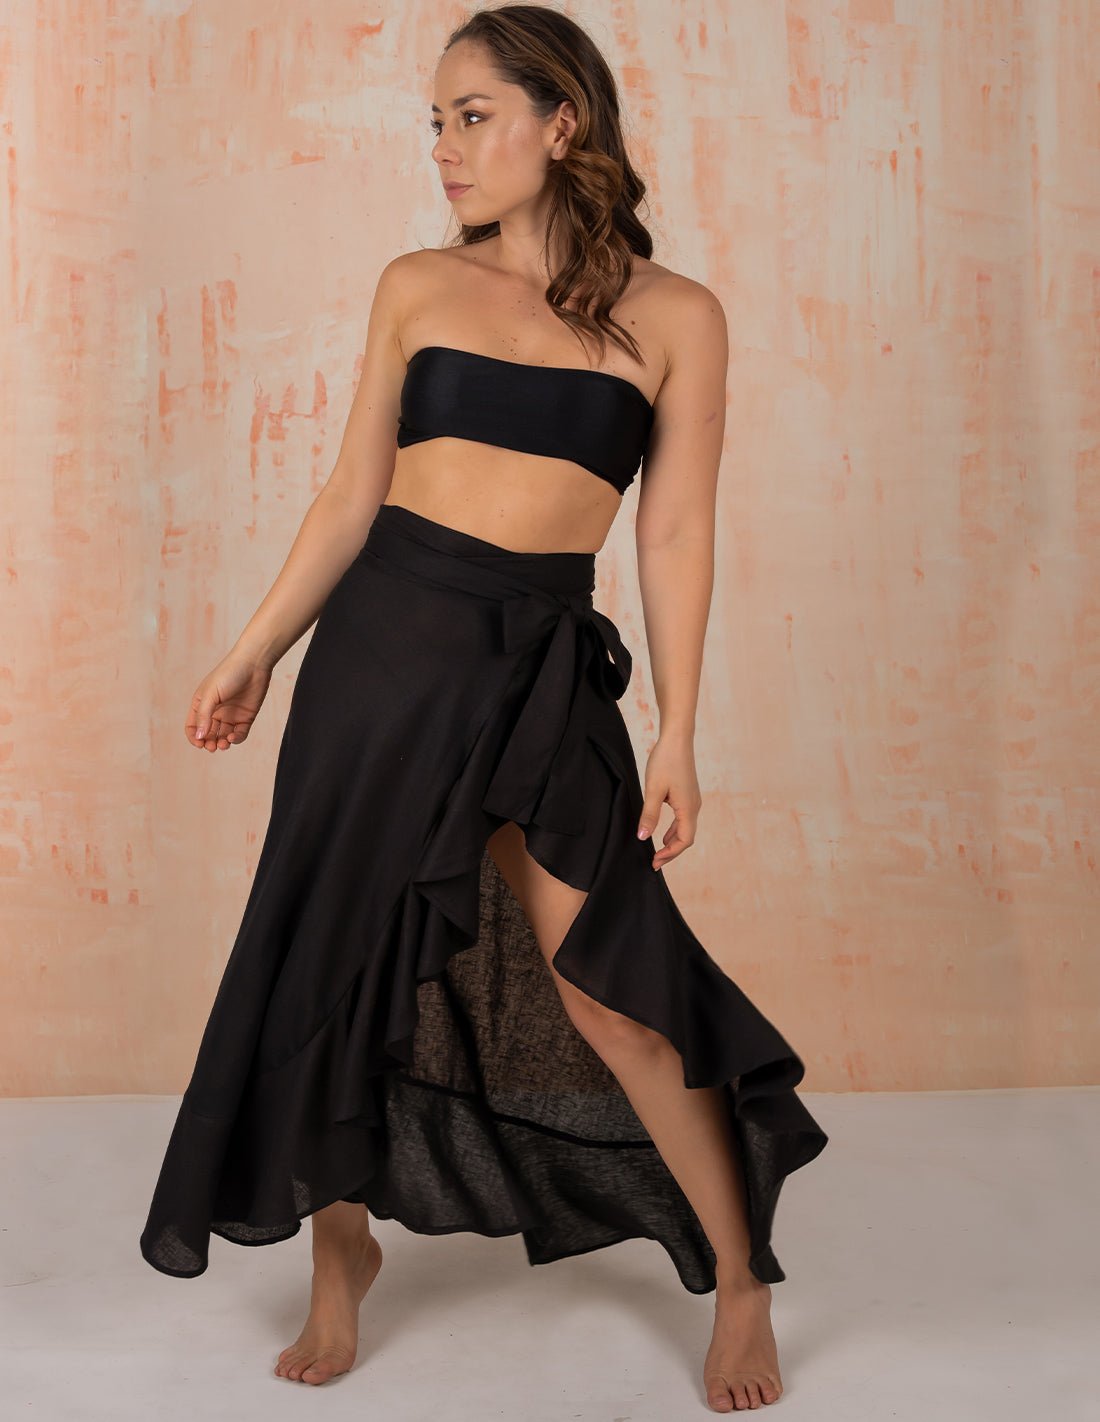 Wave Skirt Black - Skirt - Entreaguas Wearable Art